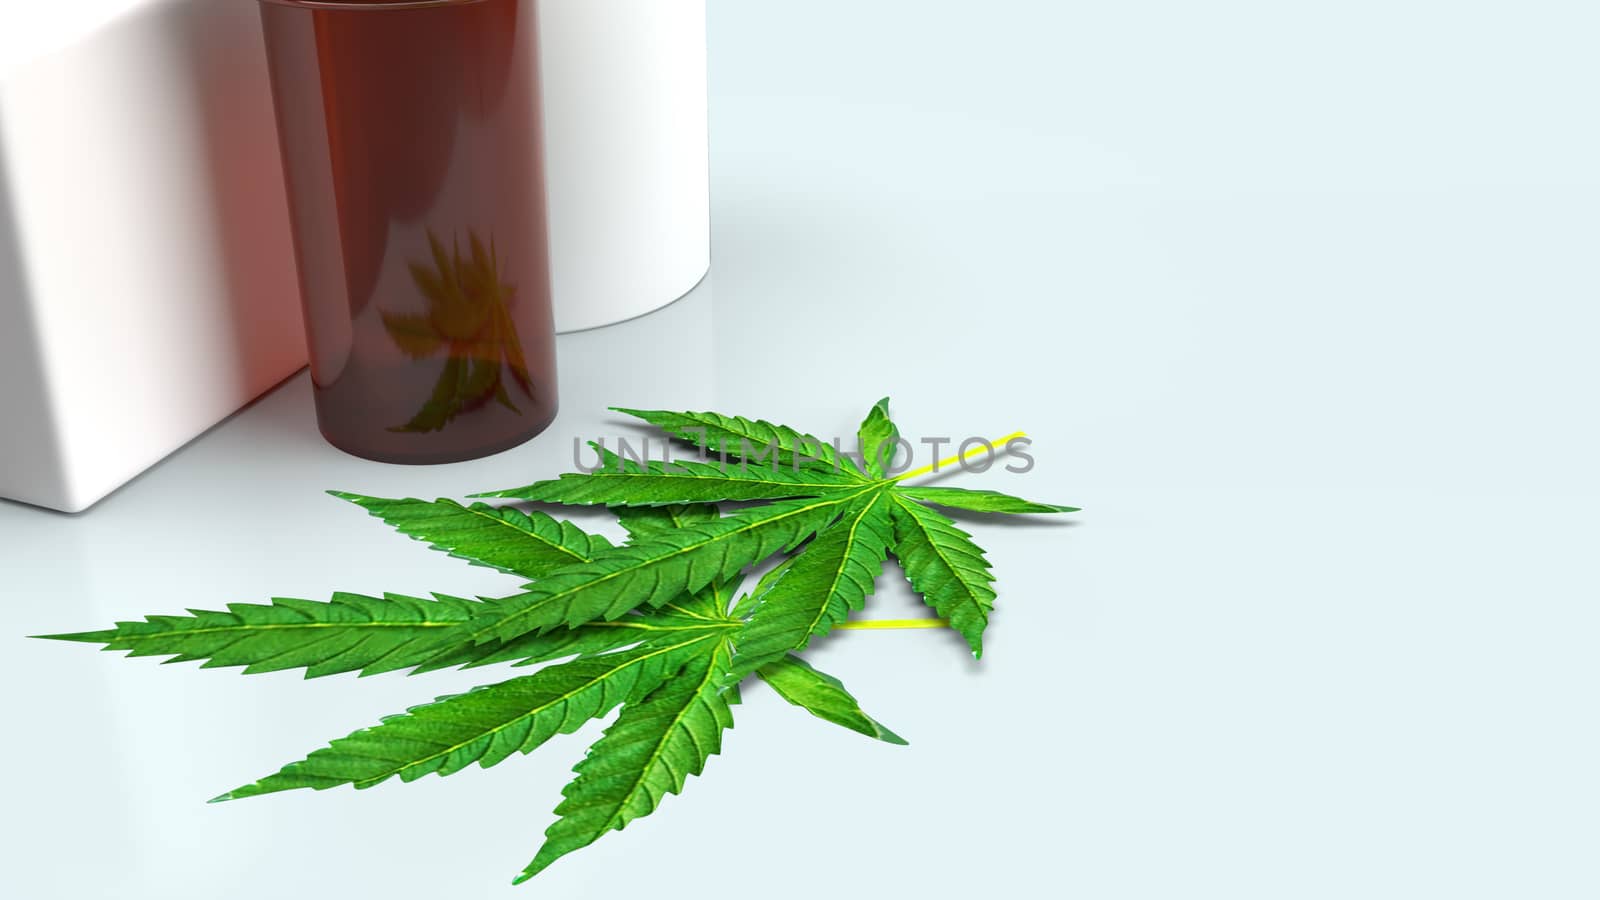 Marijuana leaf  and Medicine bottle for medical content 3d rendering.
